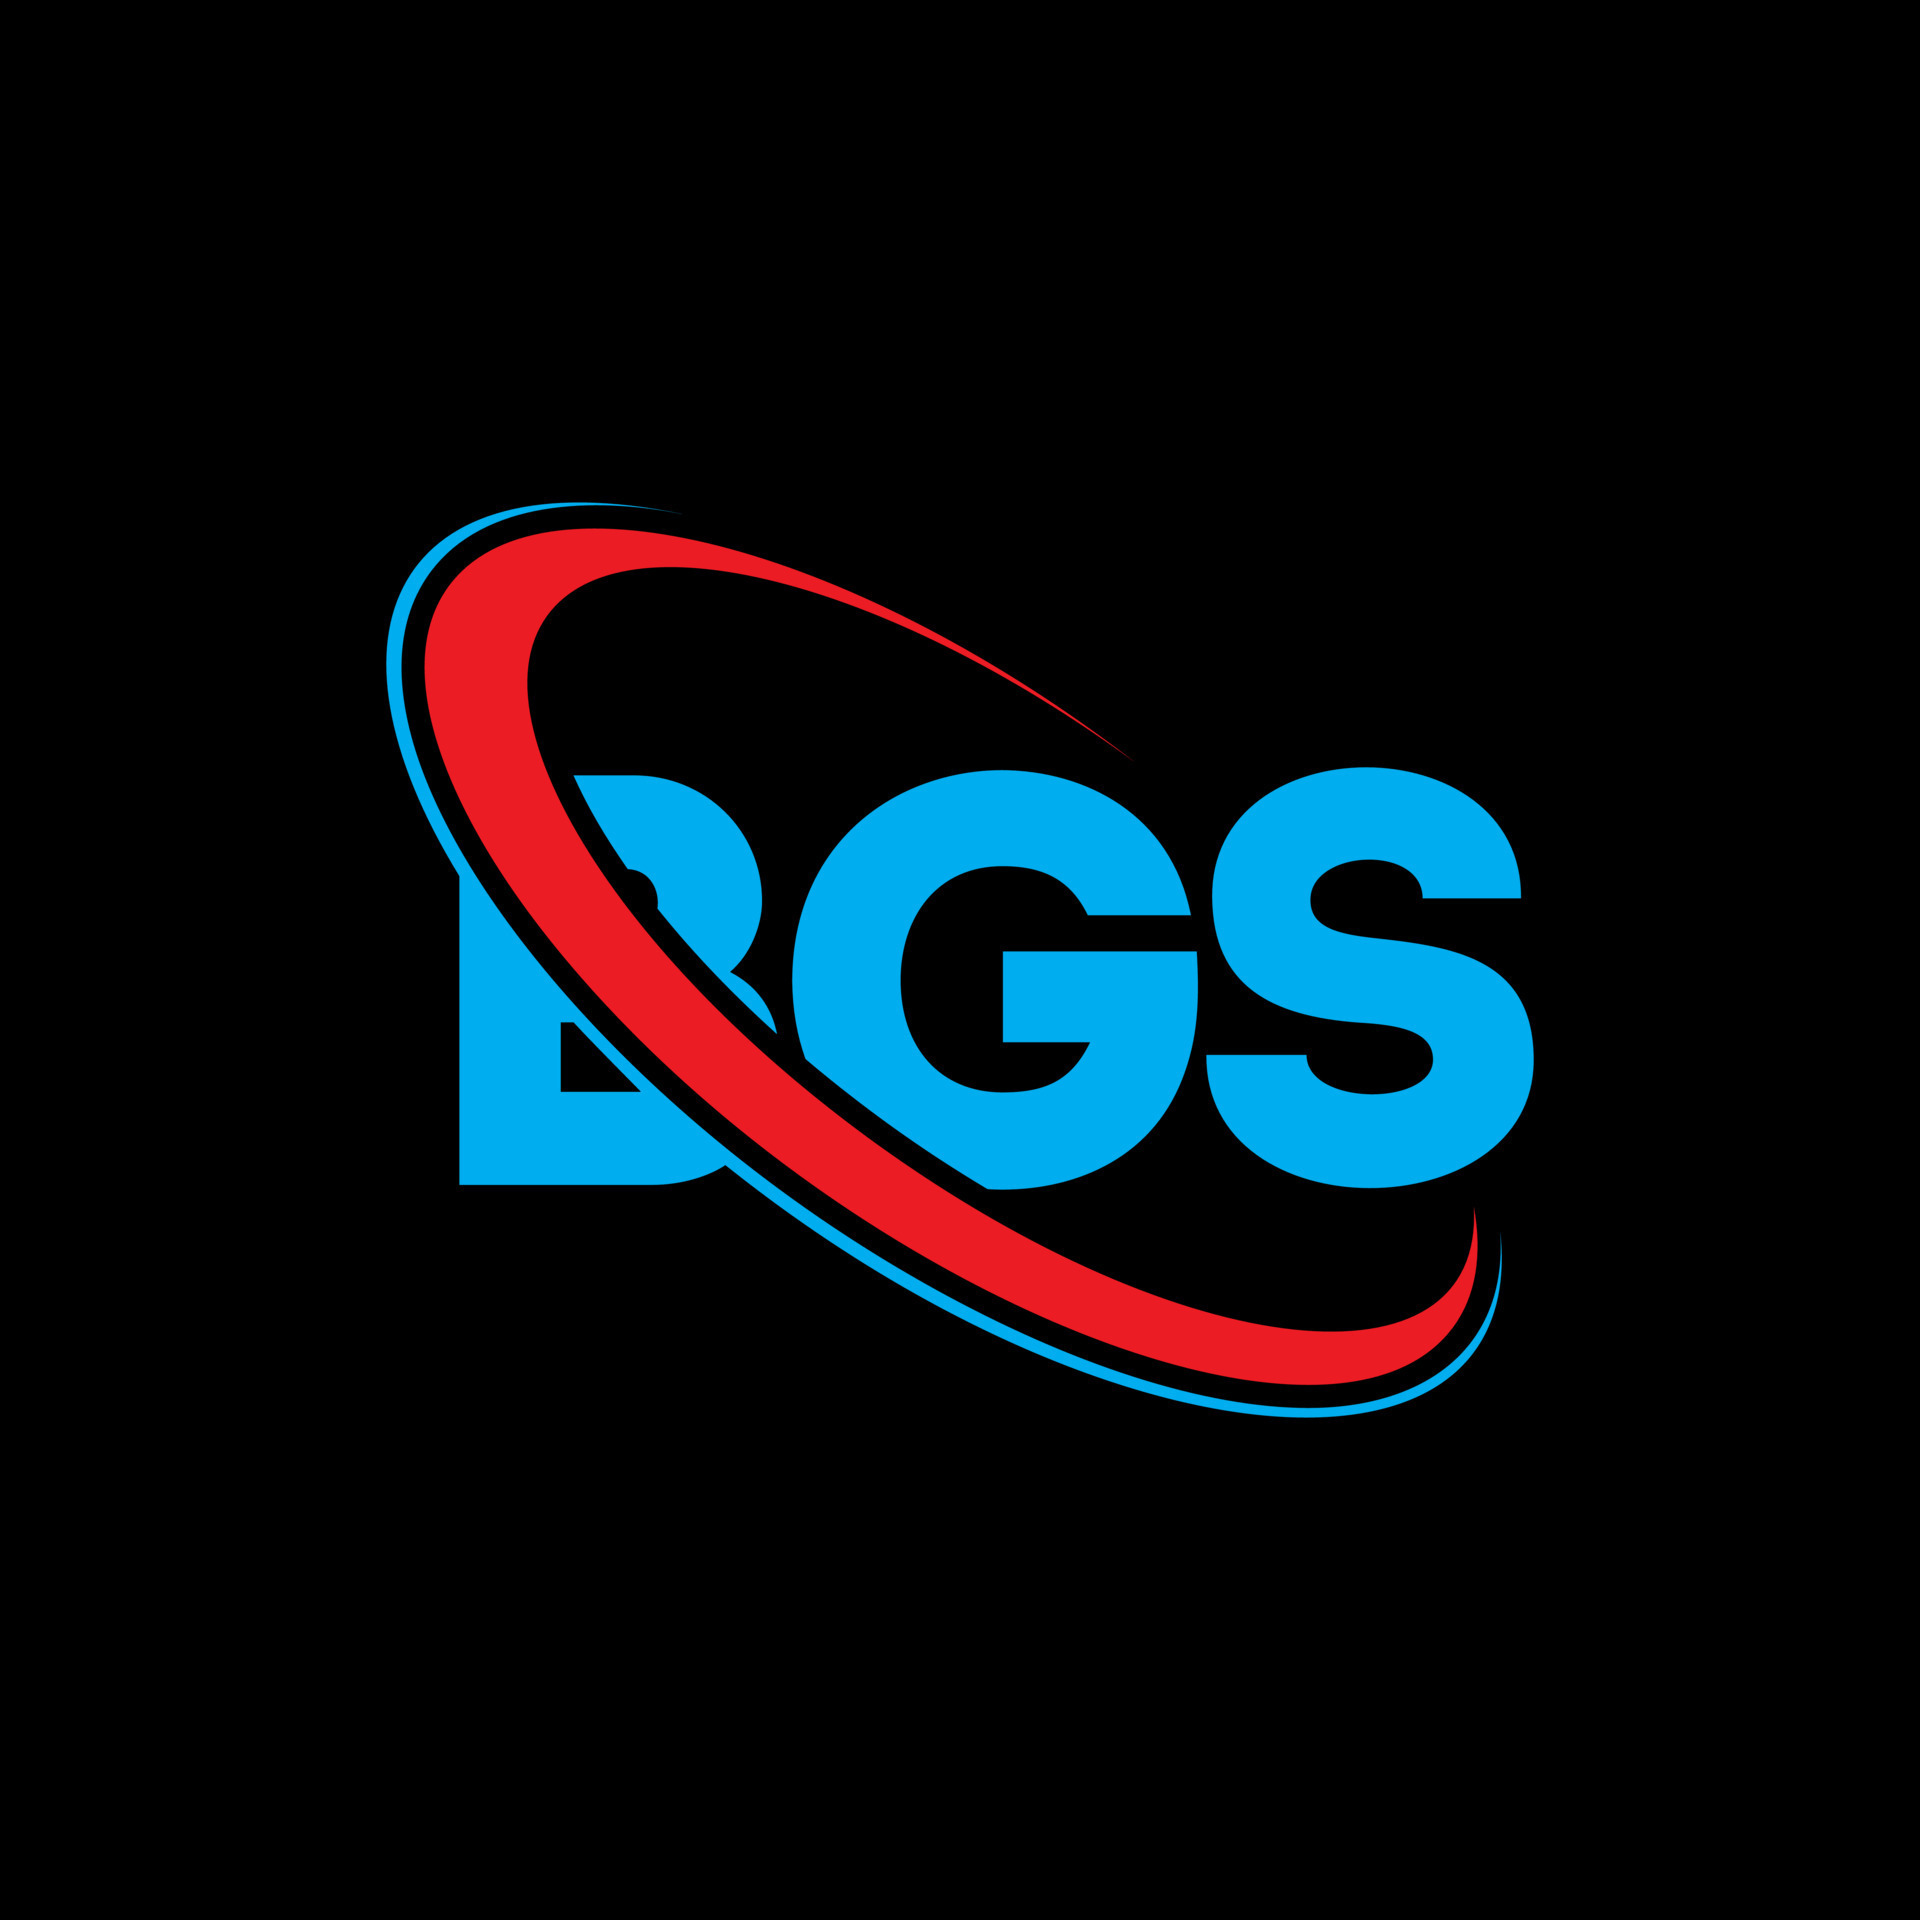 logo bgs. lettre bgs. création de logo de lettre bgs. initiales